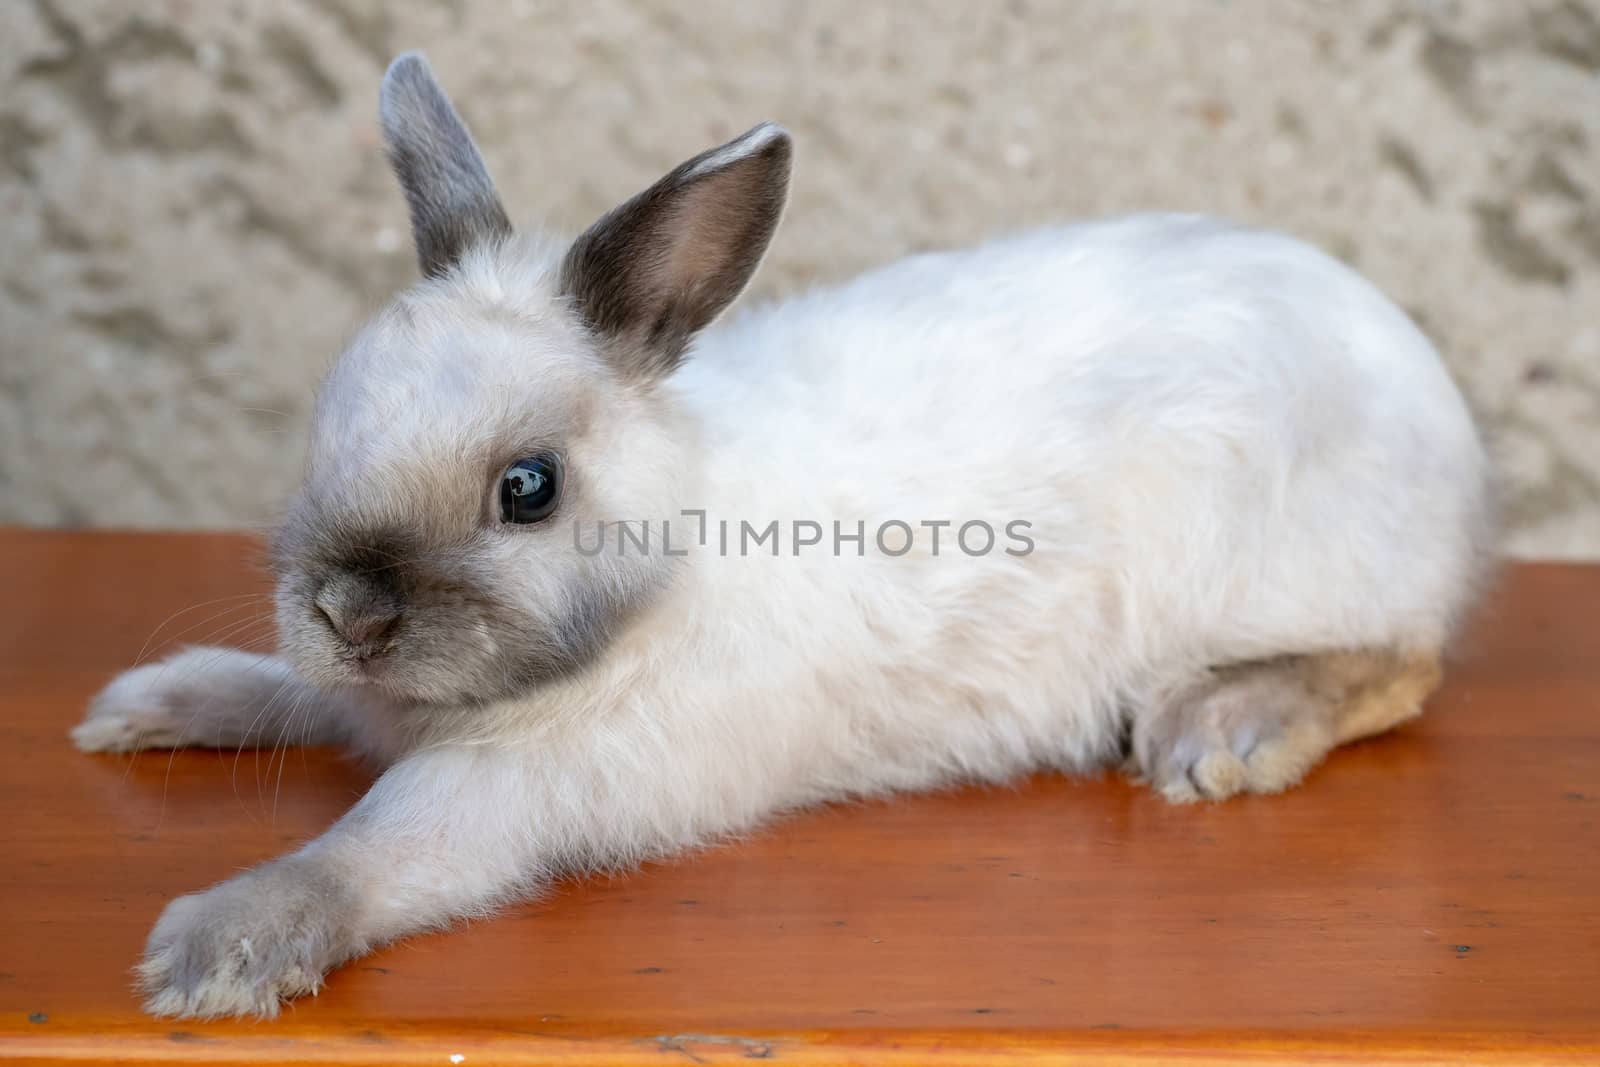 Little rabbit on wooden desk by xtrekx